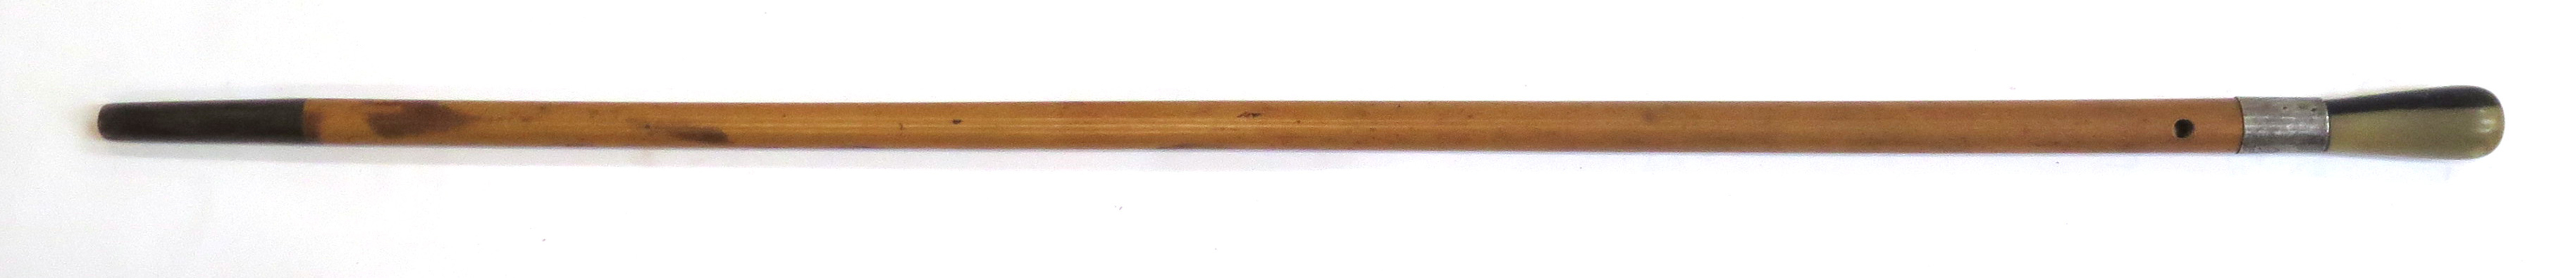 Käpp, bambu och horn med silverbeslag, 1900-talets 1 hälft, _11381a_8d94b68575964a7_lg.jpeg